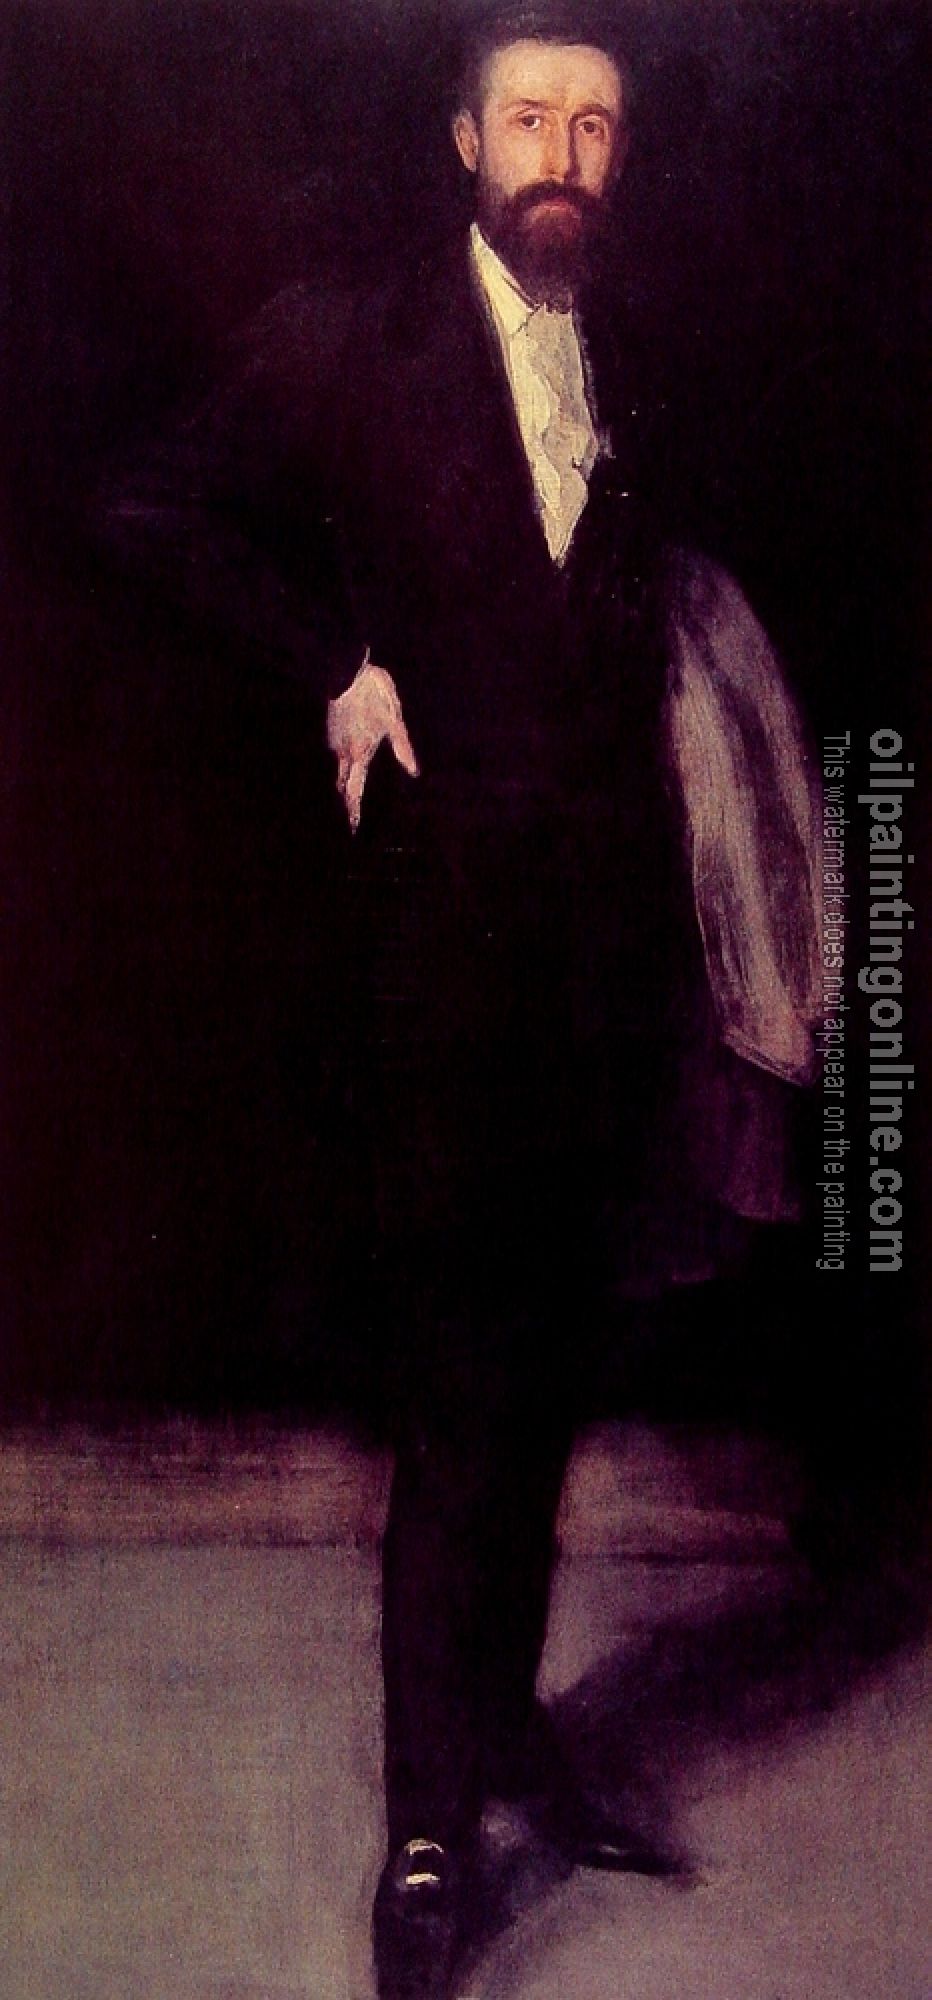 Whistler, James Abbottb McNeill - Portrait of Leyland